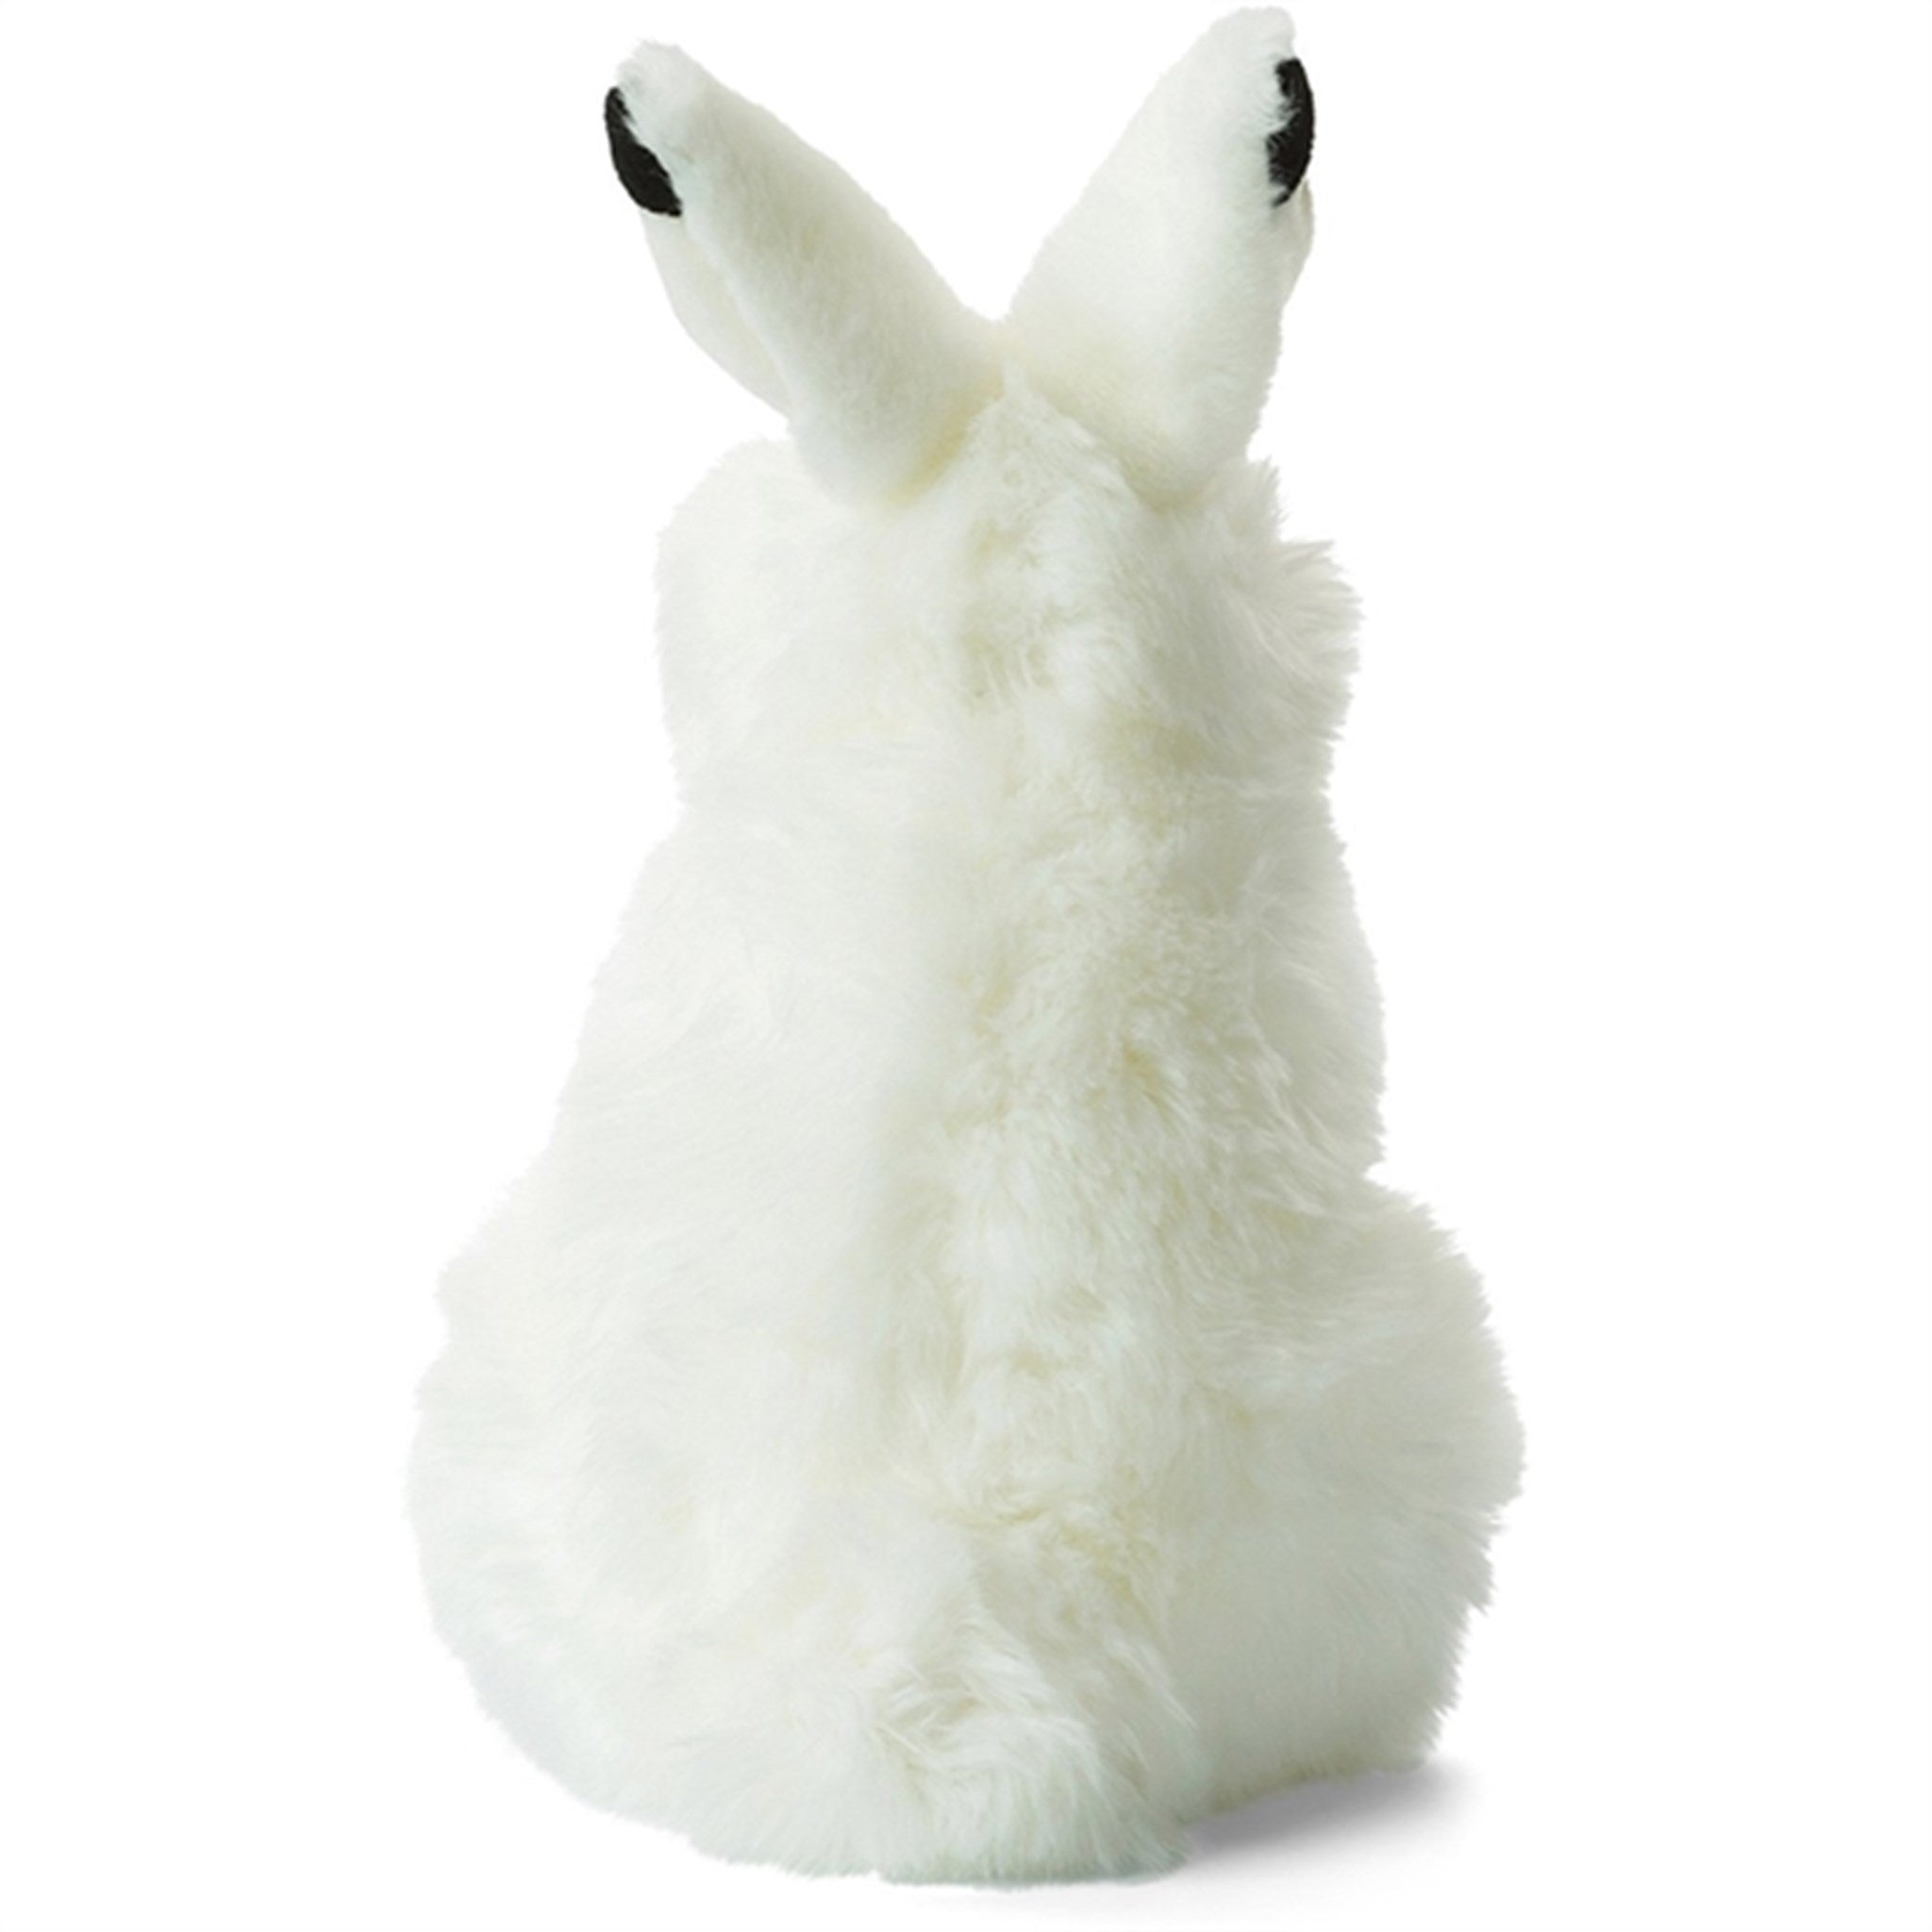 Bon Ton Toys WWF Plush Snowshoe Hare 24 cm 4